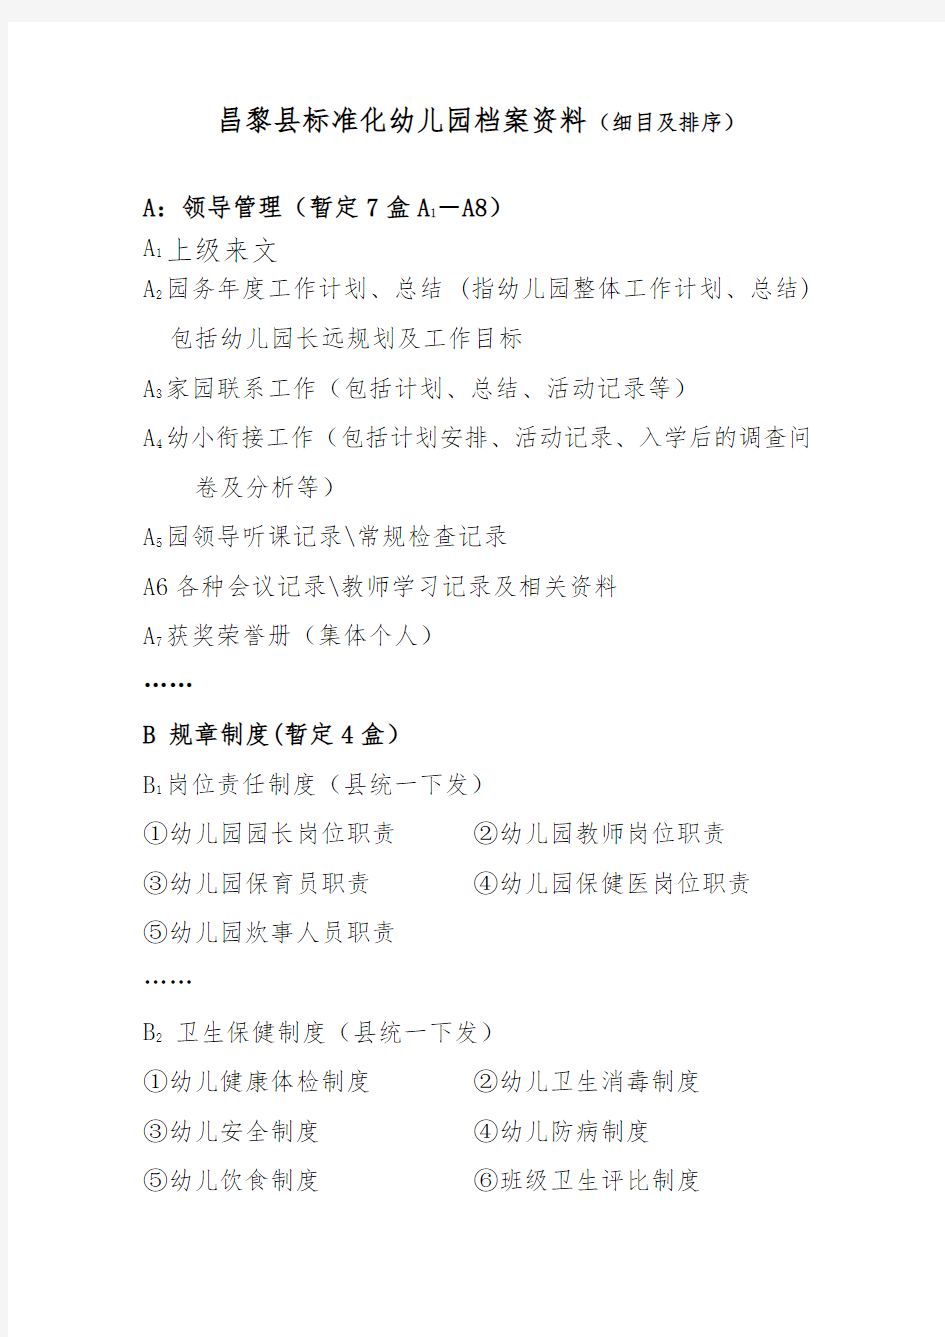 昌黎县标准化幼儿园档案资料(细目及排序)